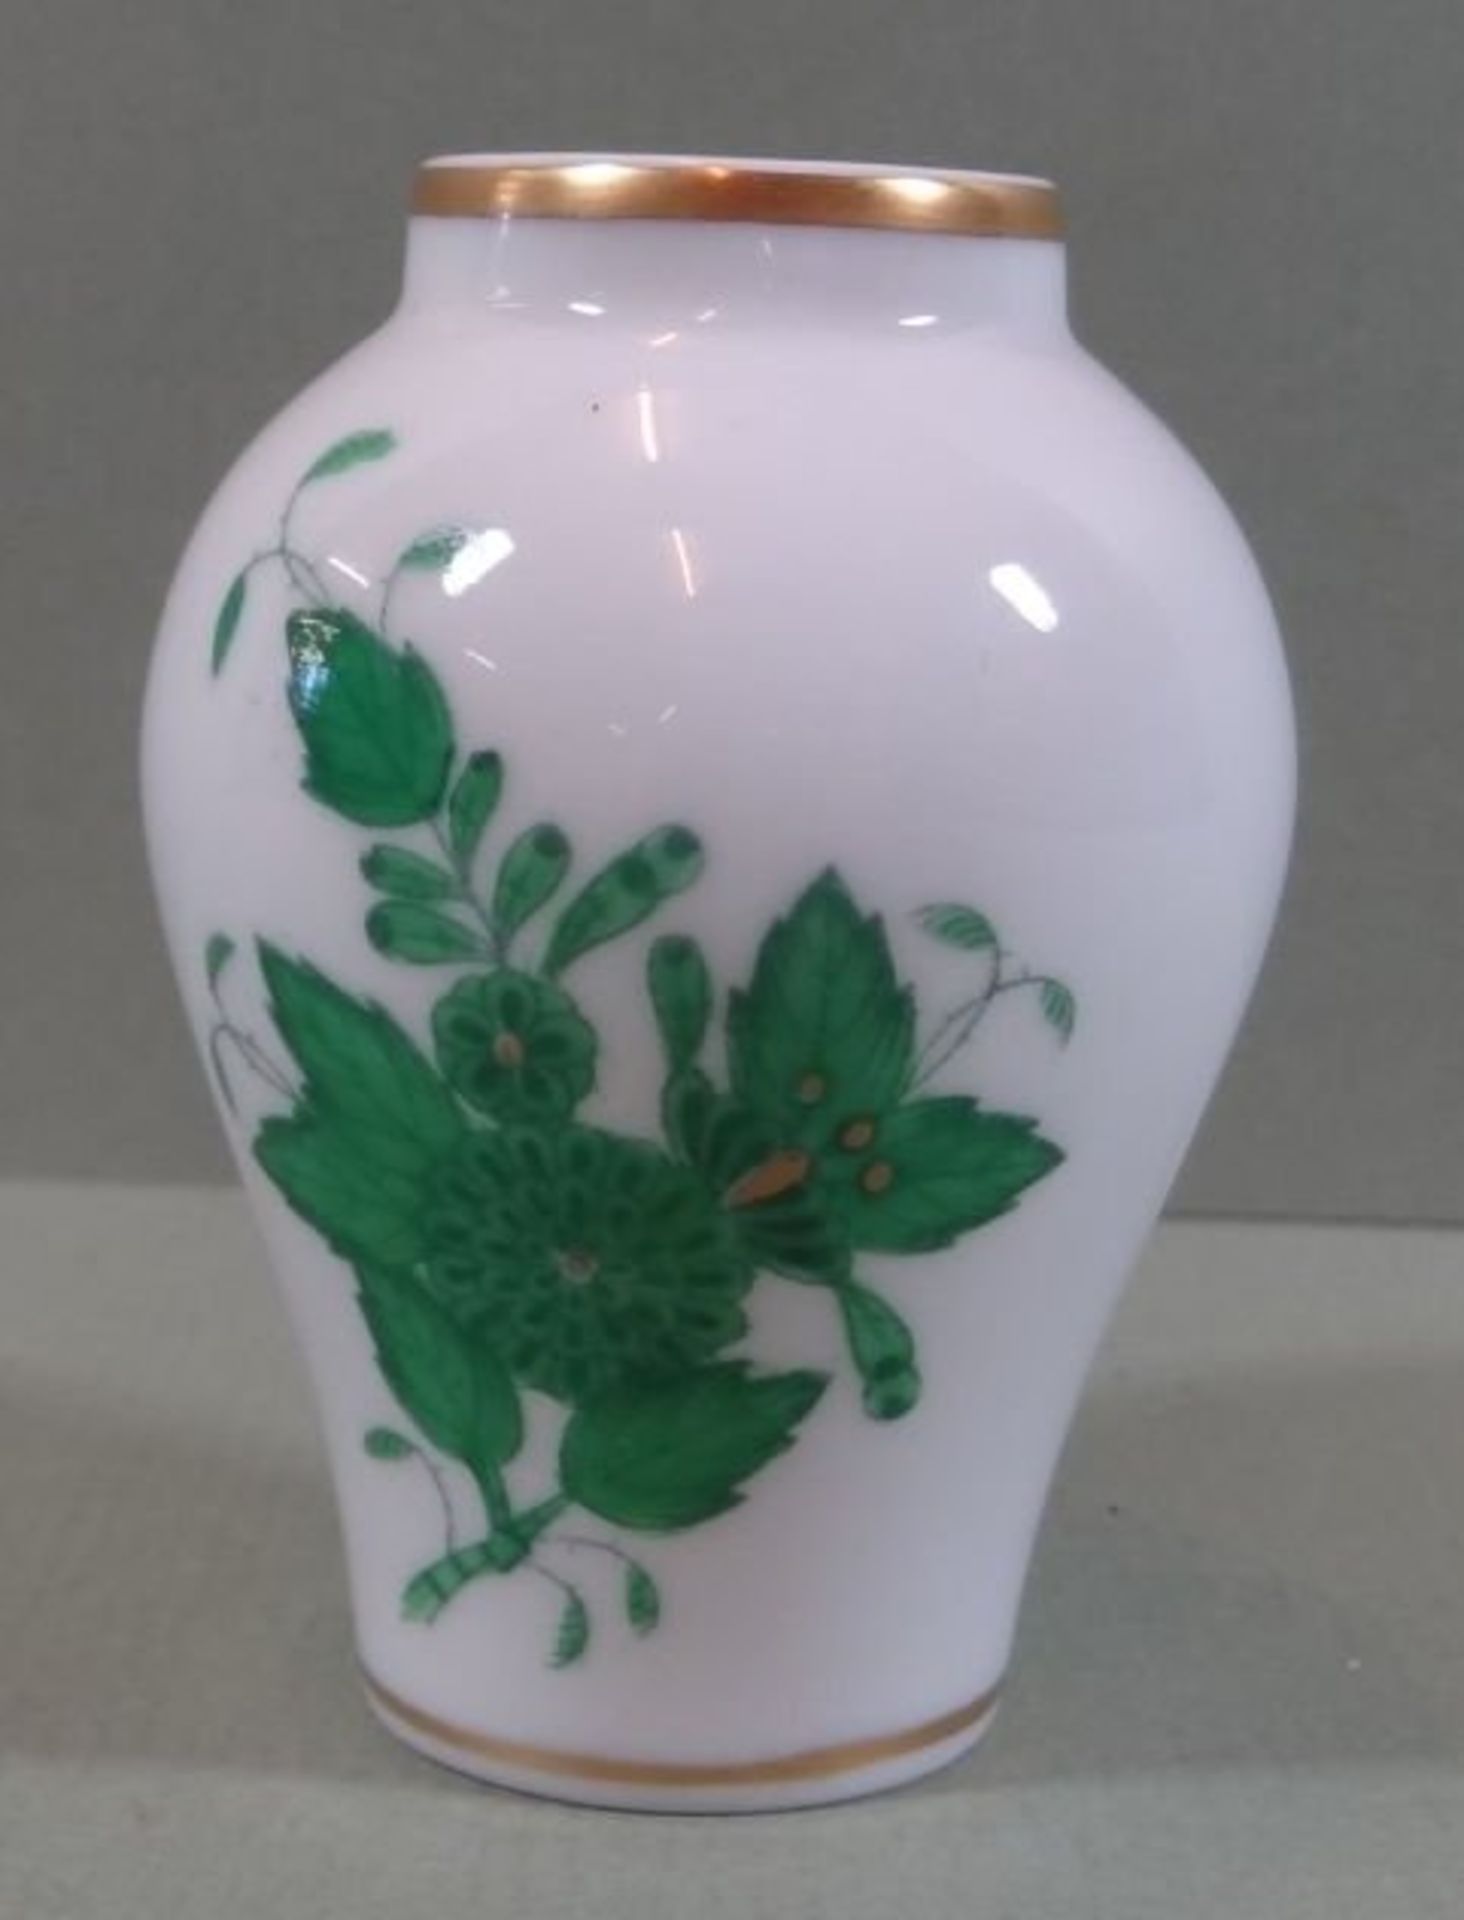 kleine Vase "Herend" Apponyi grün, H-6 cm